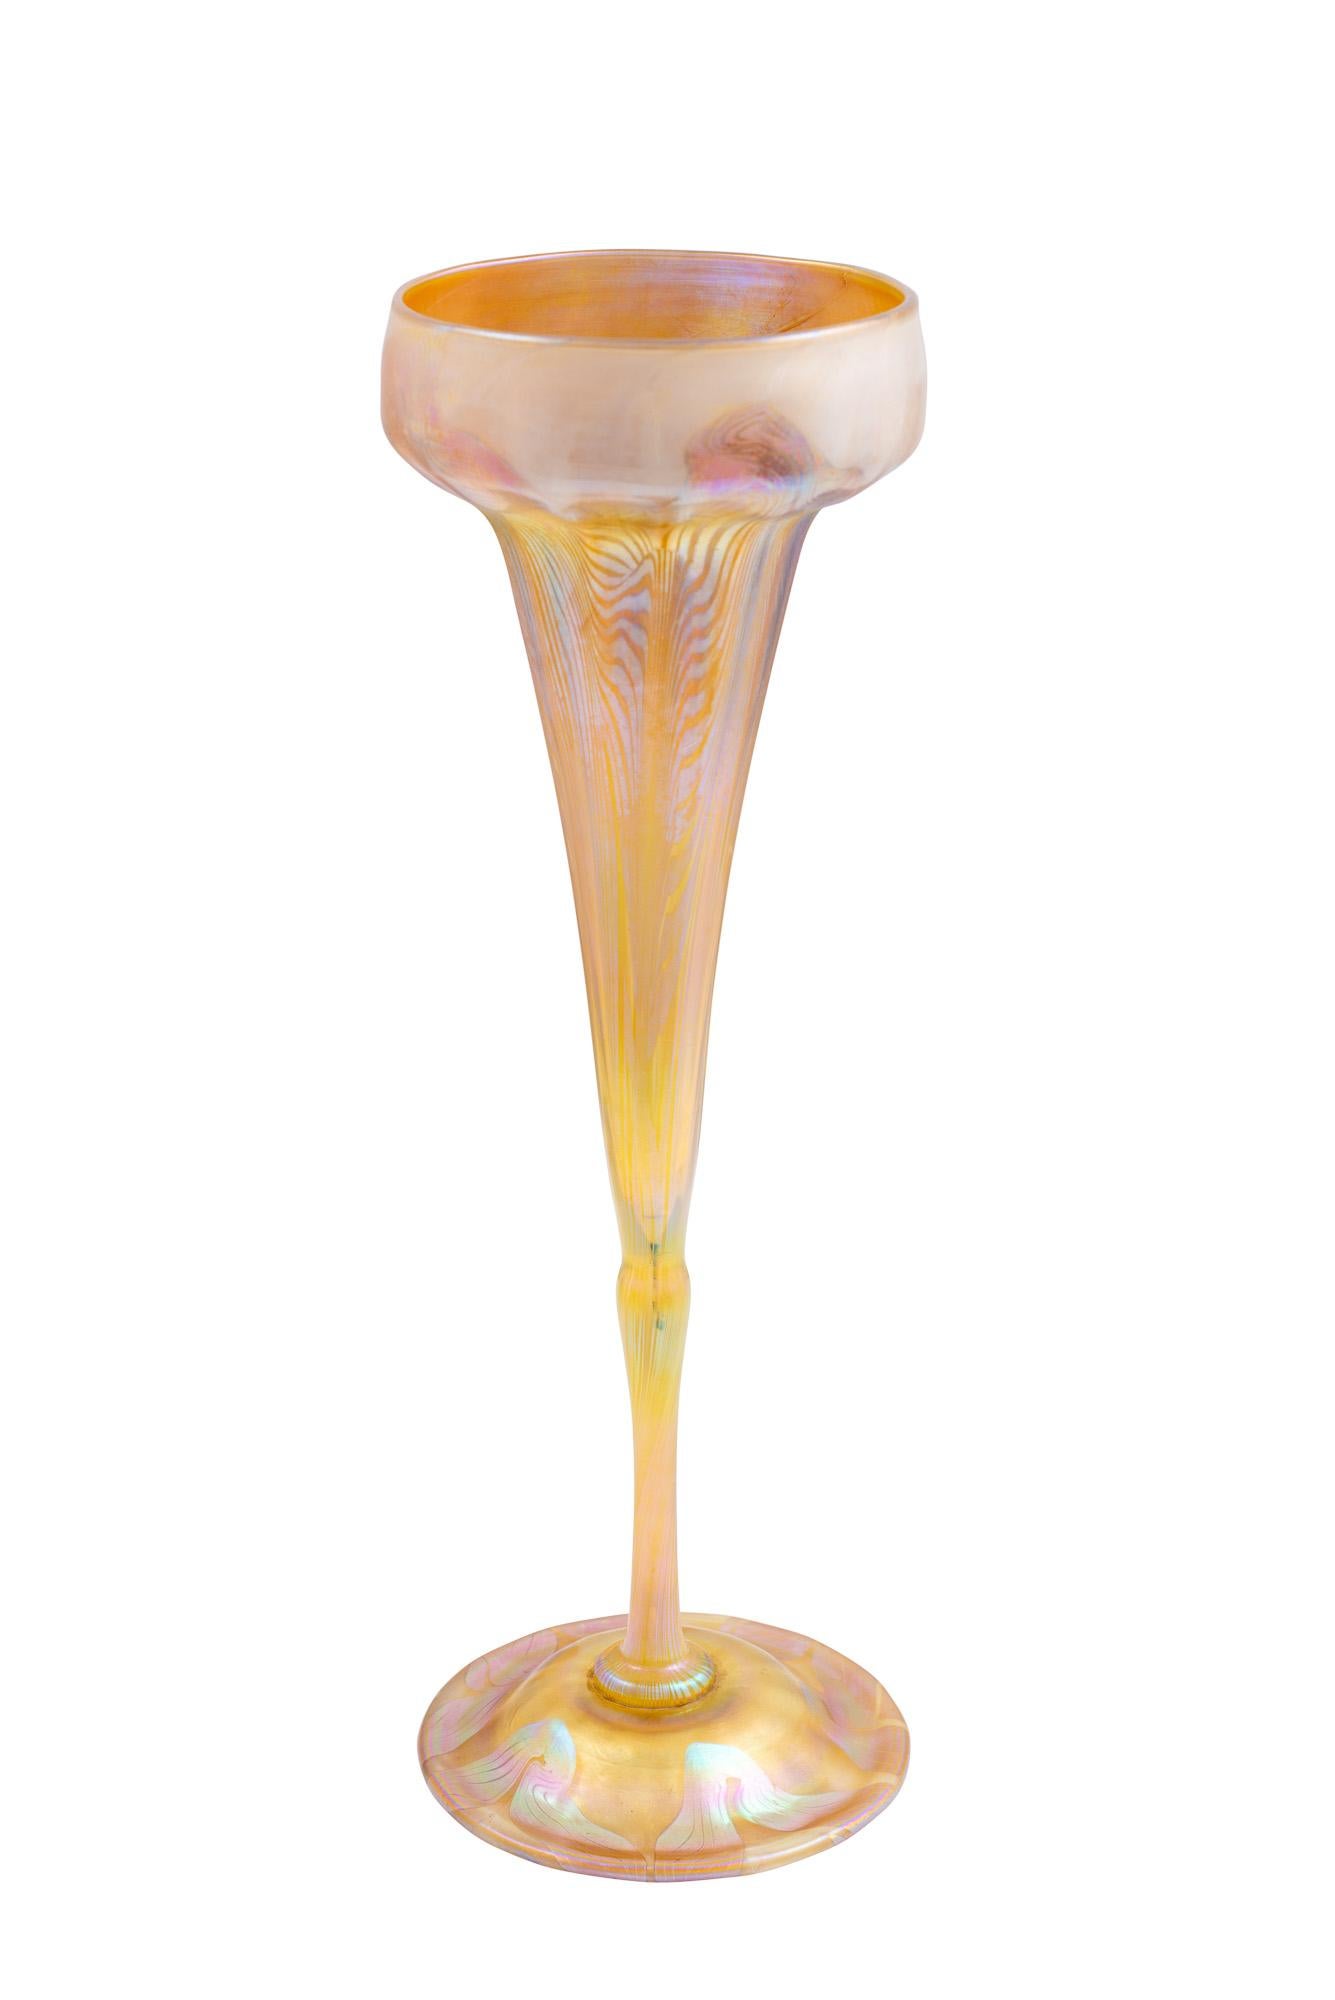 Vase Louis Comfort Tiffany Schillerndes Favrilglas 1896 Amerikanischer Jugendstil

Die Firma Louis Comfort Tiffany war um die Jahrhundertwende eine der wichtigsten und berühmtesten Kunstmanufakturen in Amerika. Neben den berühmten Lampen und den